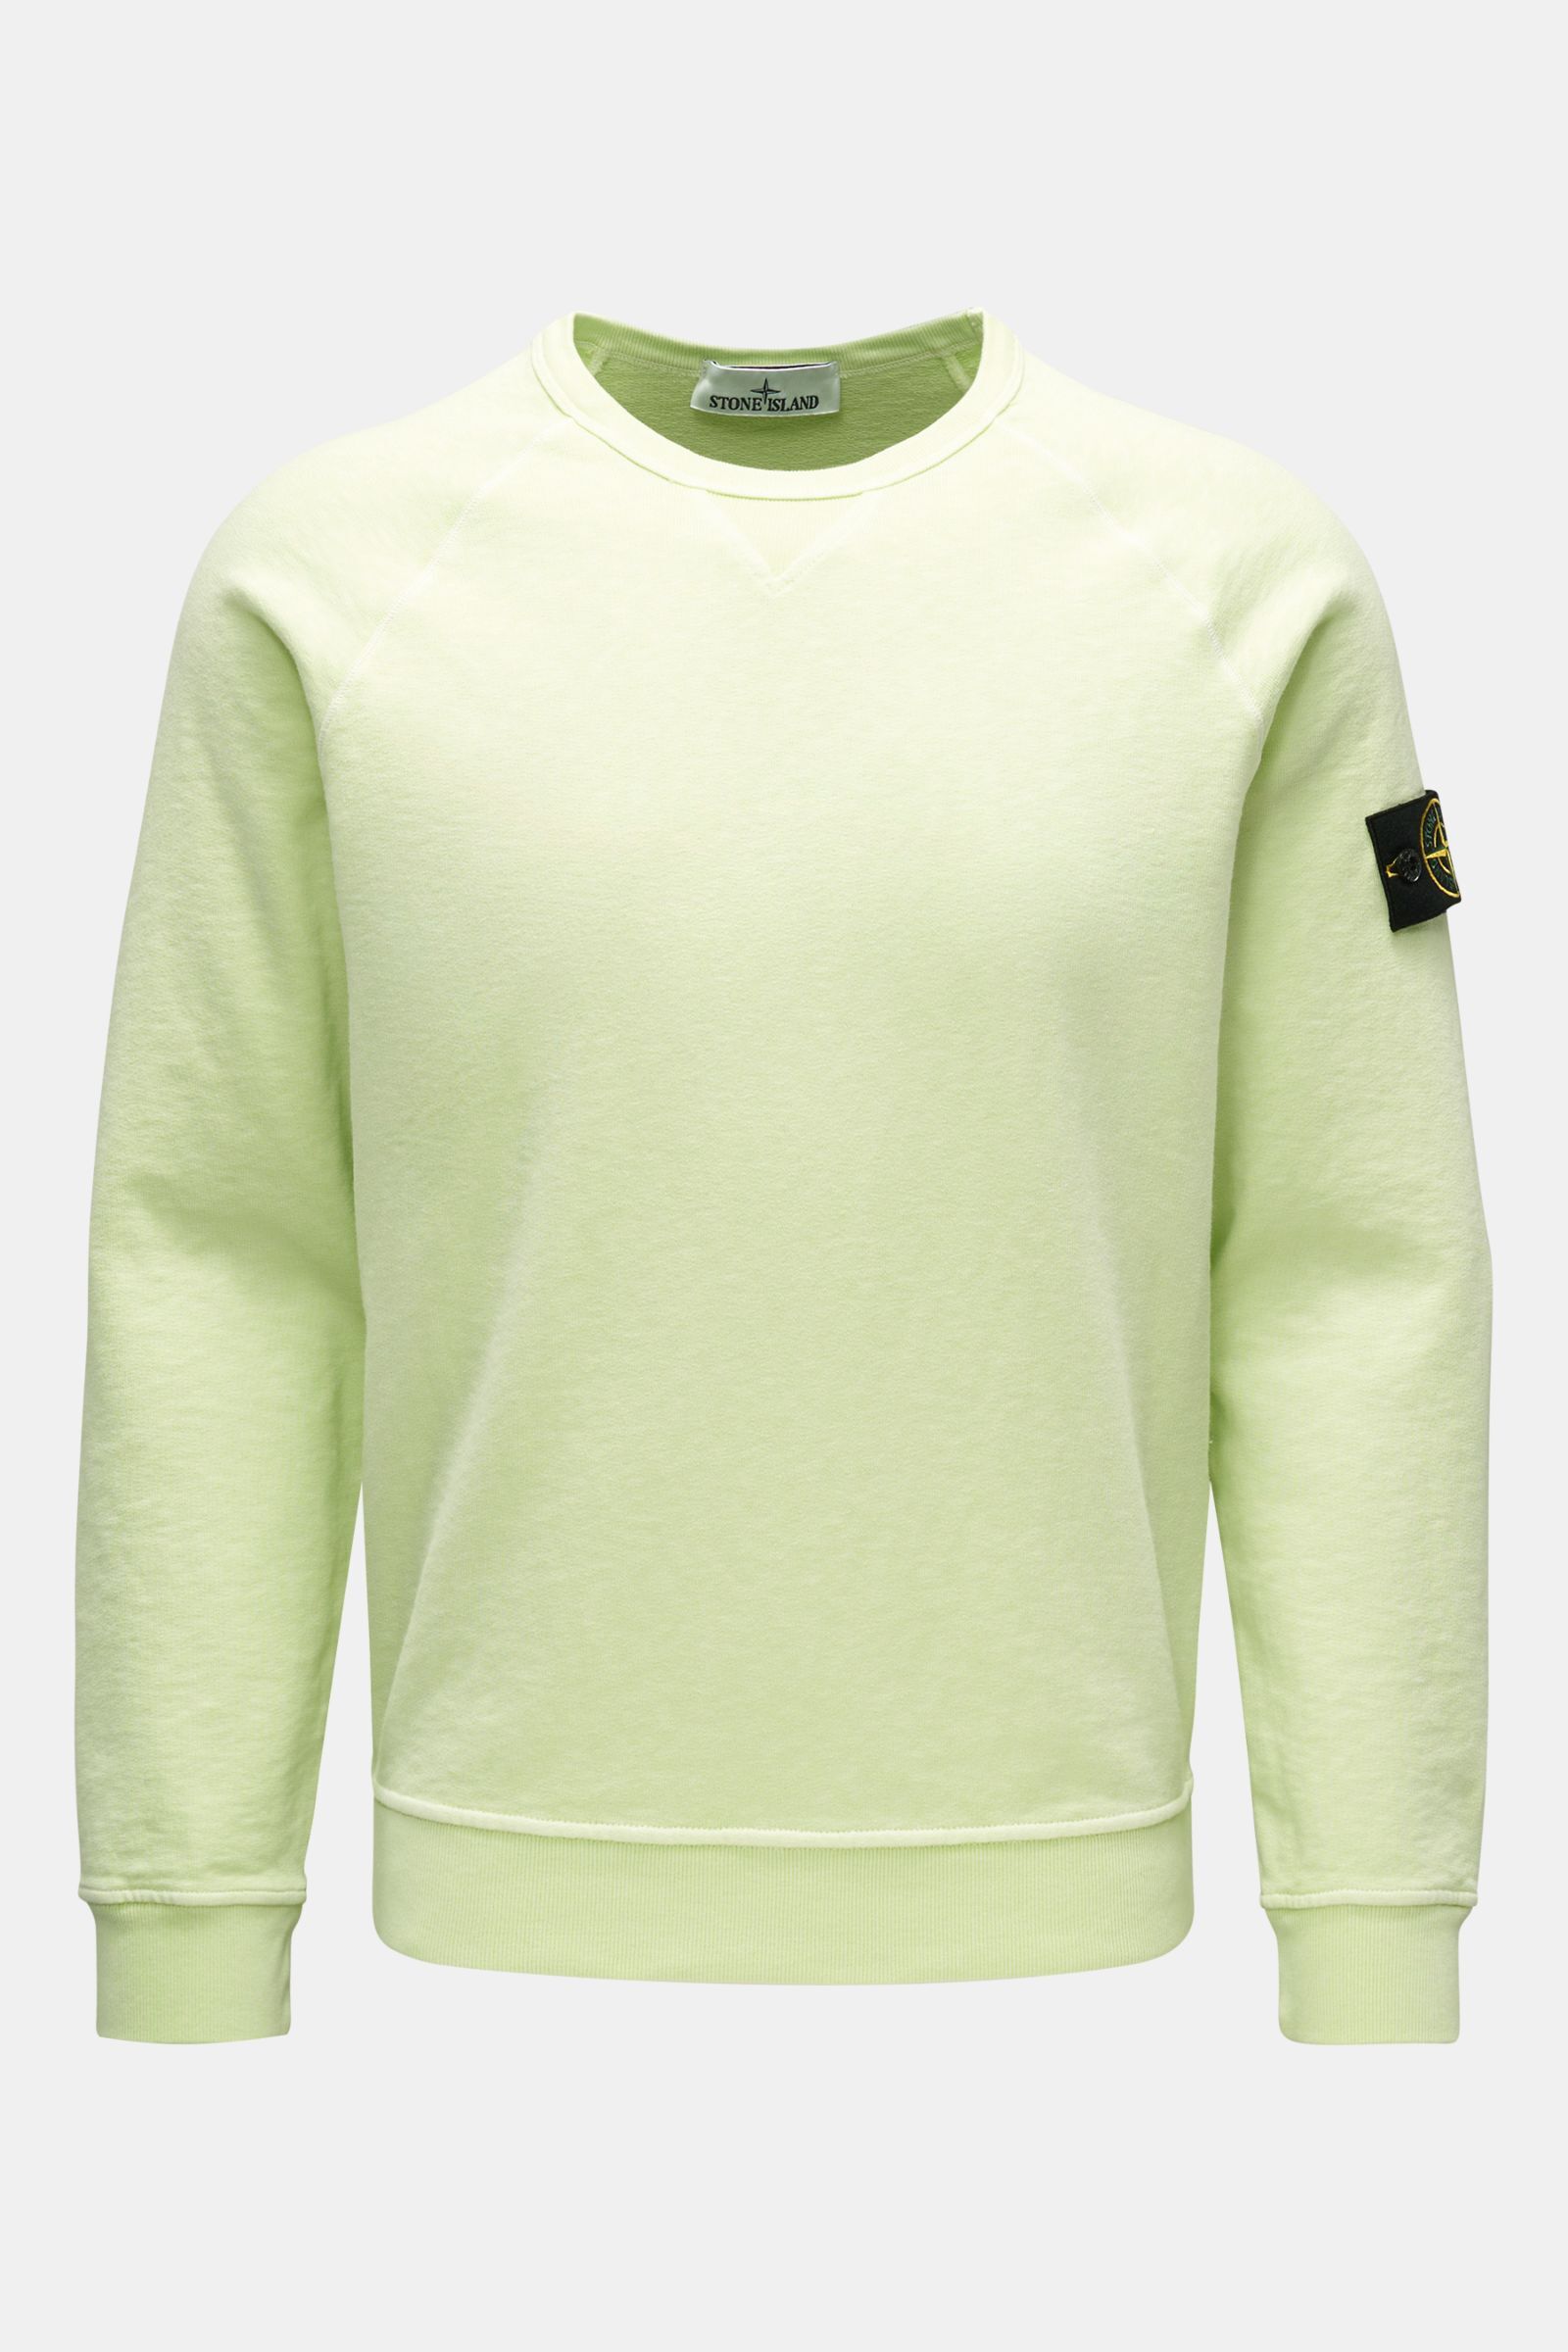 wiel Motel Zuiver Stone Island Garment dyed sweater Groen